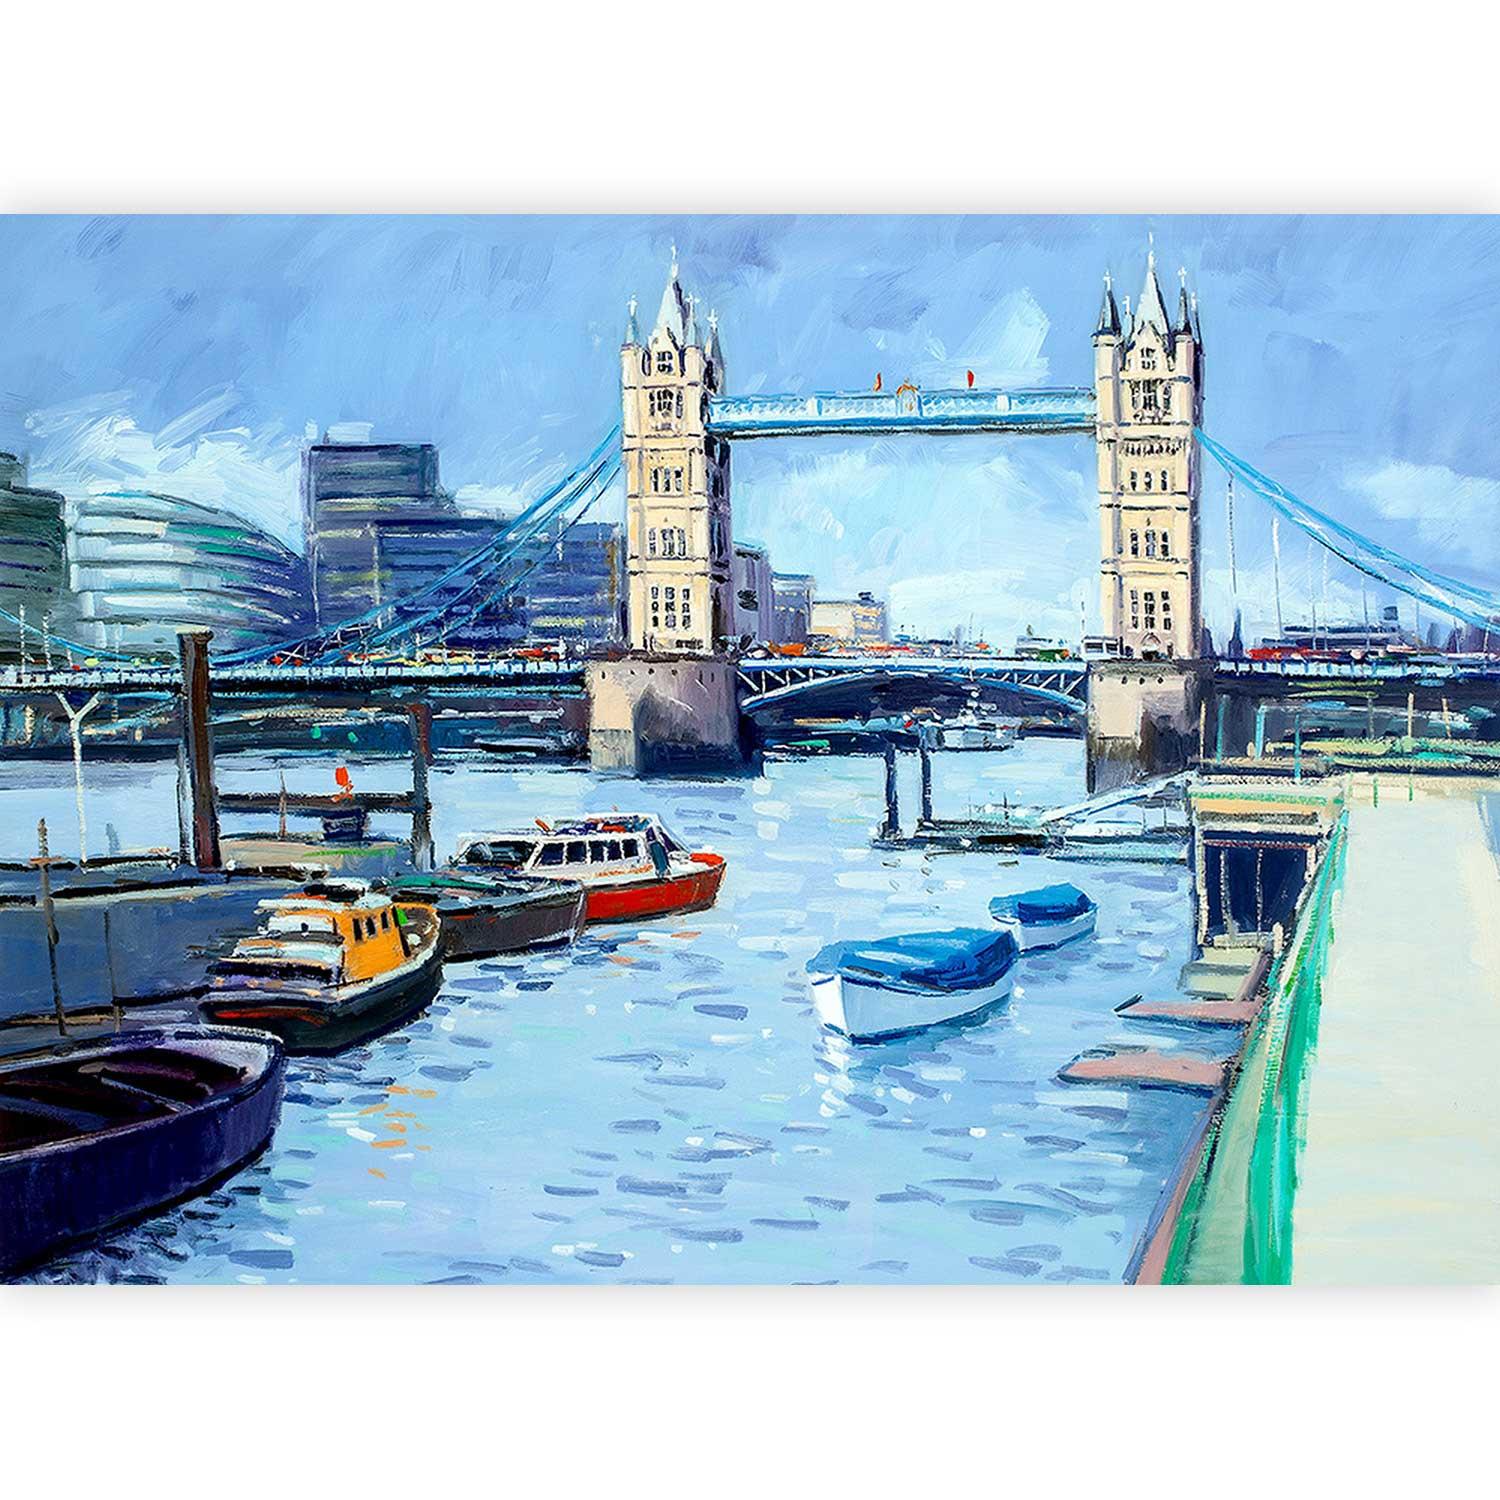 Tower Bridge by artist Robert Kelsey